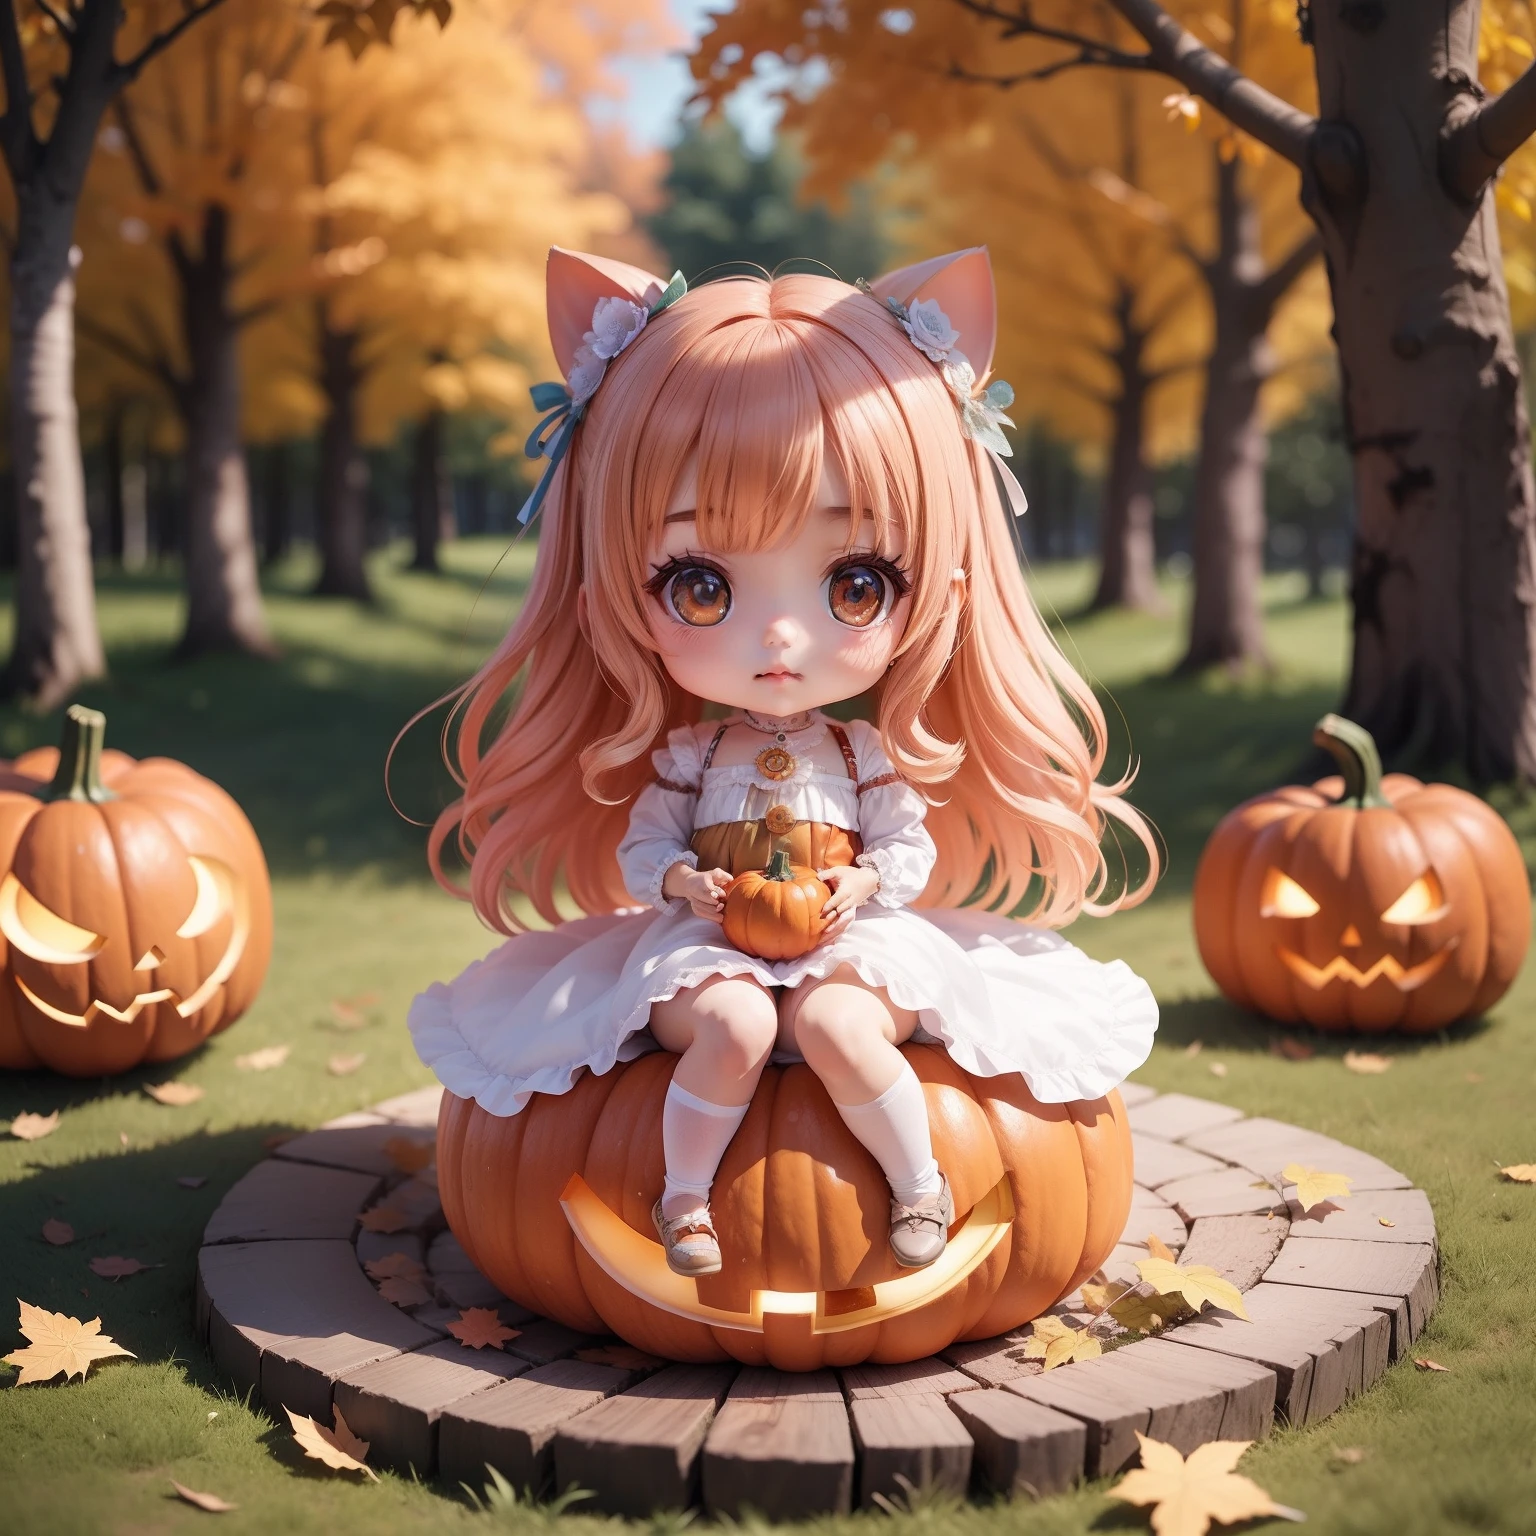 （（（超傑作、最高品質、超詳細な、女の子1人、ちび：1.5））、ハロウィーンの衣装、カボチャの上に座る、背景は秋のおとぎ話の森の中